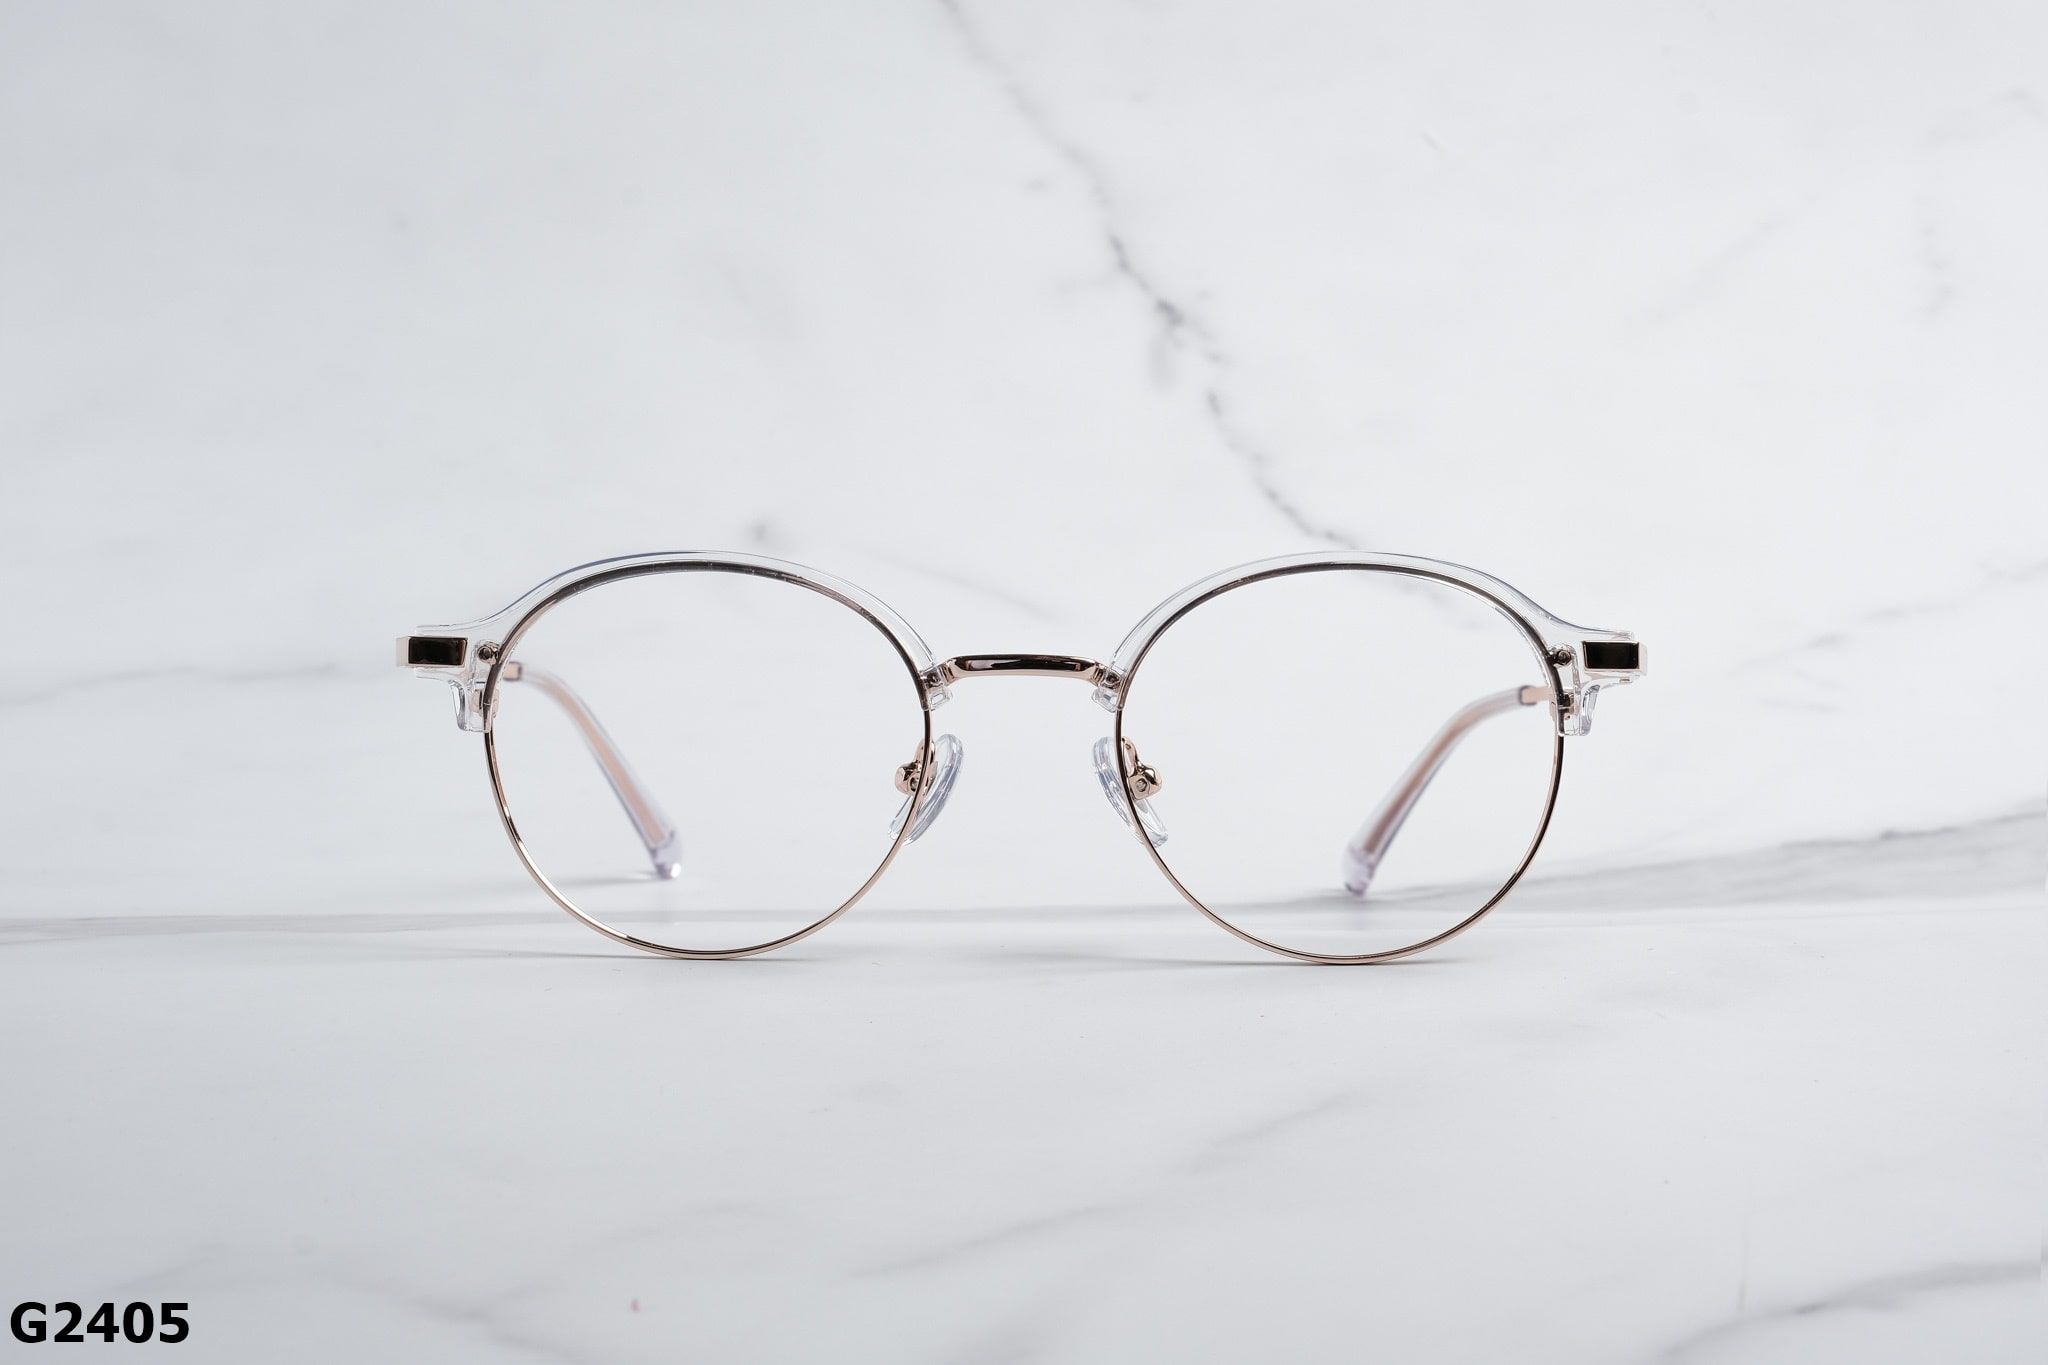  Rex-ton Eyewear - Glasses - G2405 